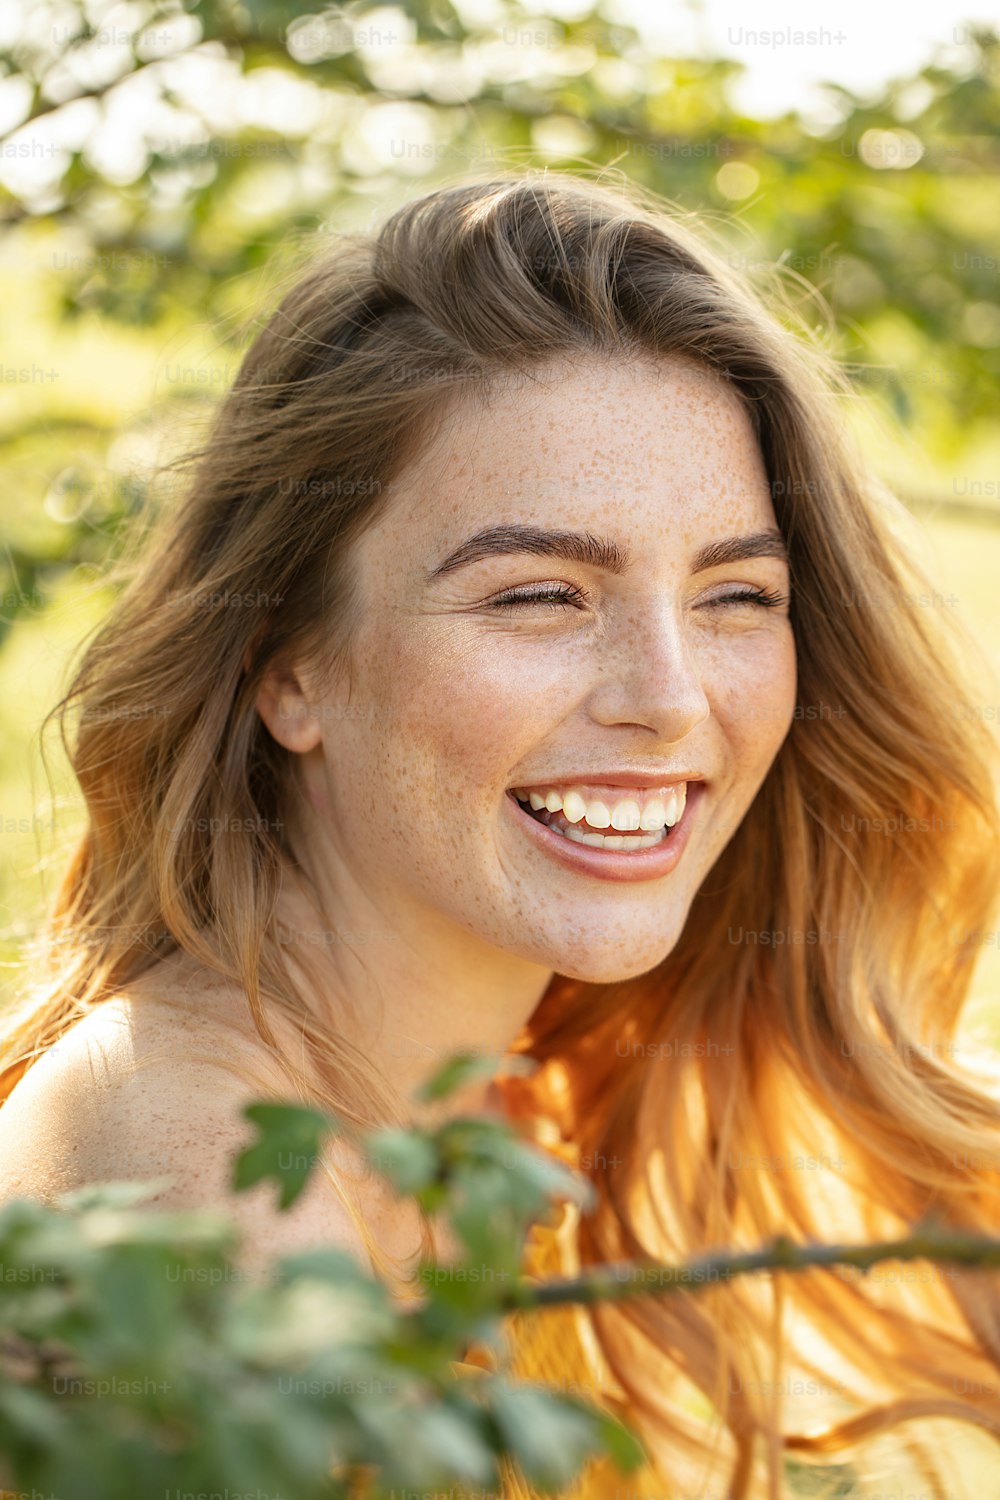 Bella donna felice con lentiggini sorridente, in posa nel giardino fiorito in una giornata di sole.